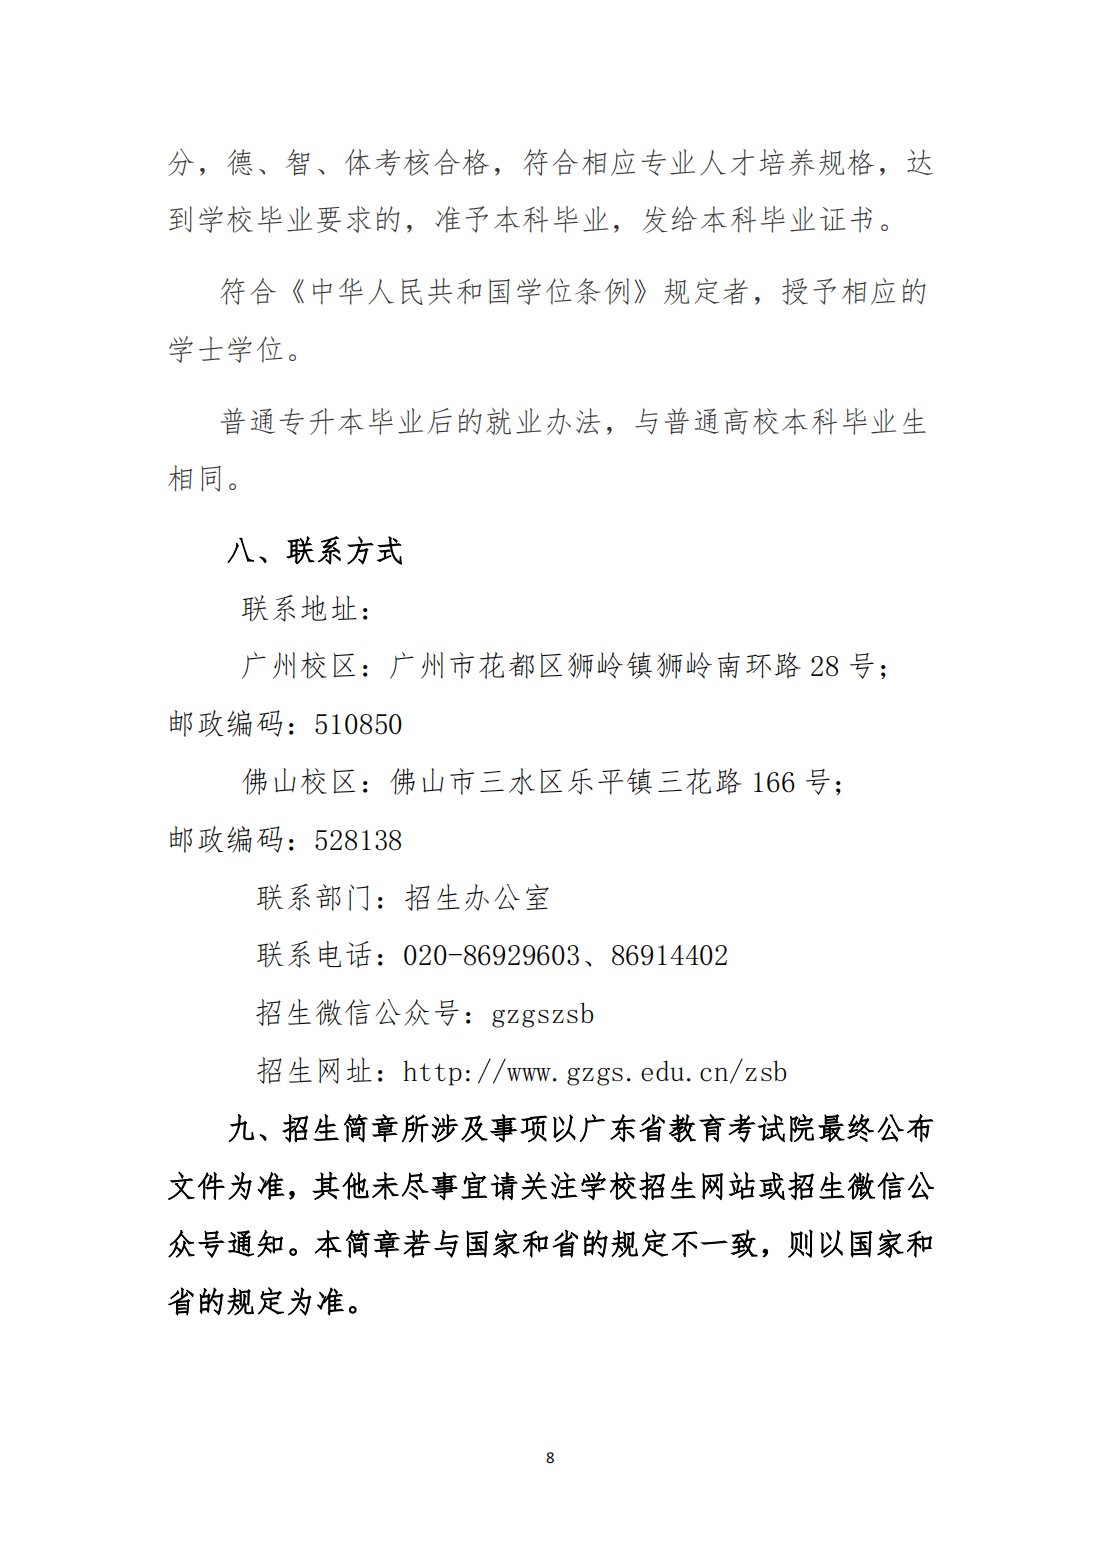 广州工商学院2023年退役大学生士兵普通专升本招生简章